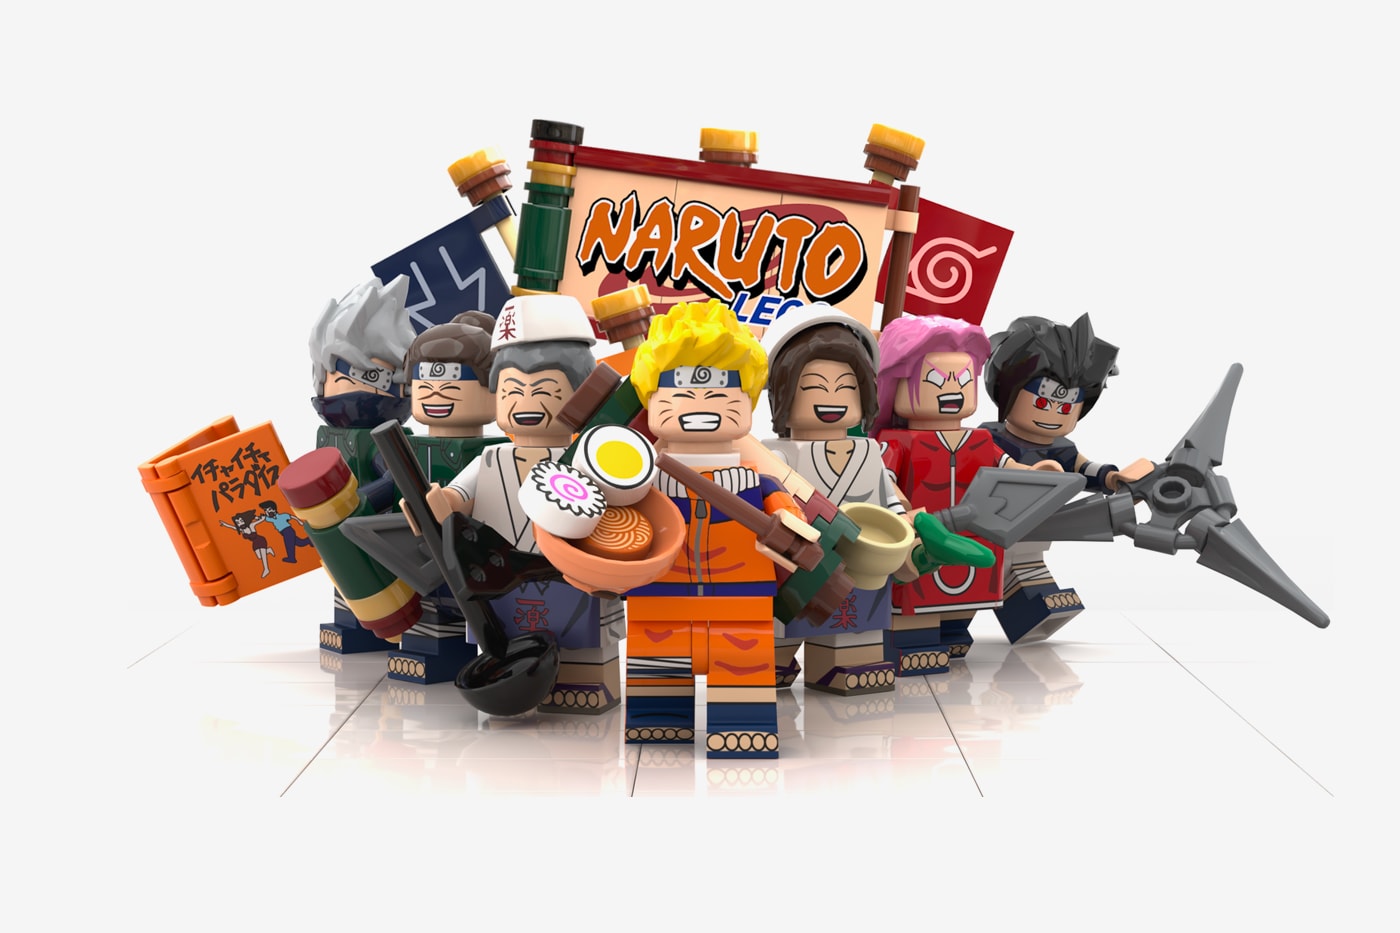 LEGO IDEAS - Naruto: Ichiraku Ramen Shop